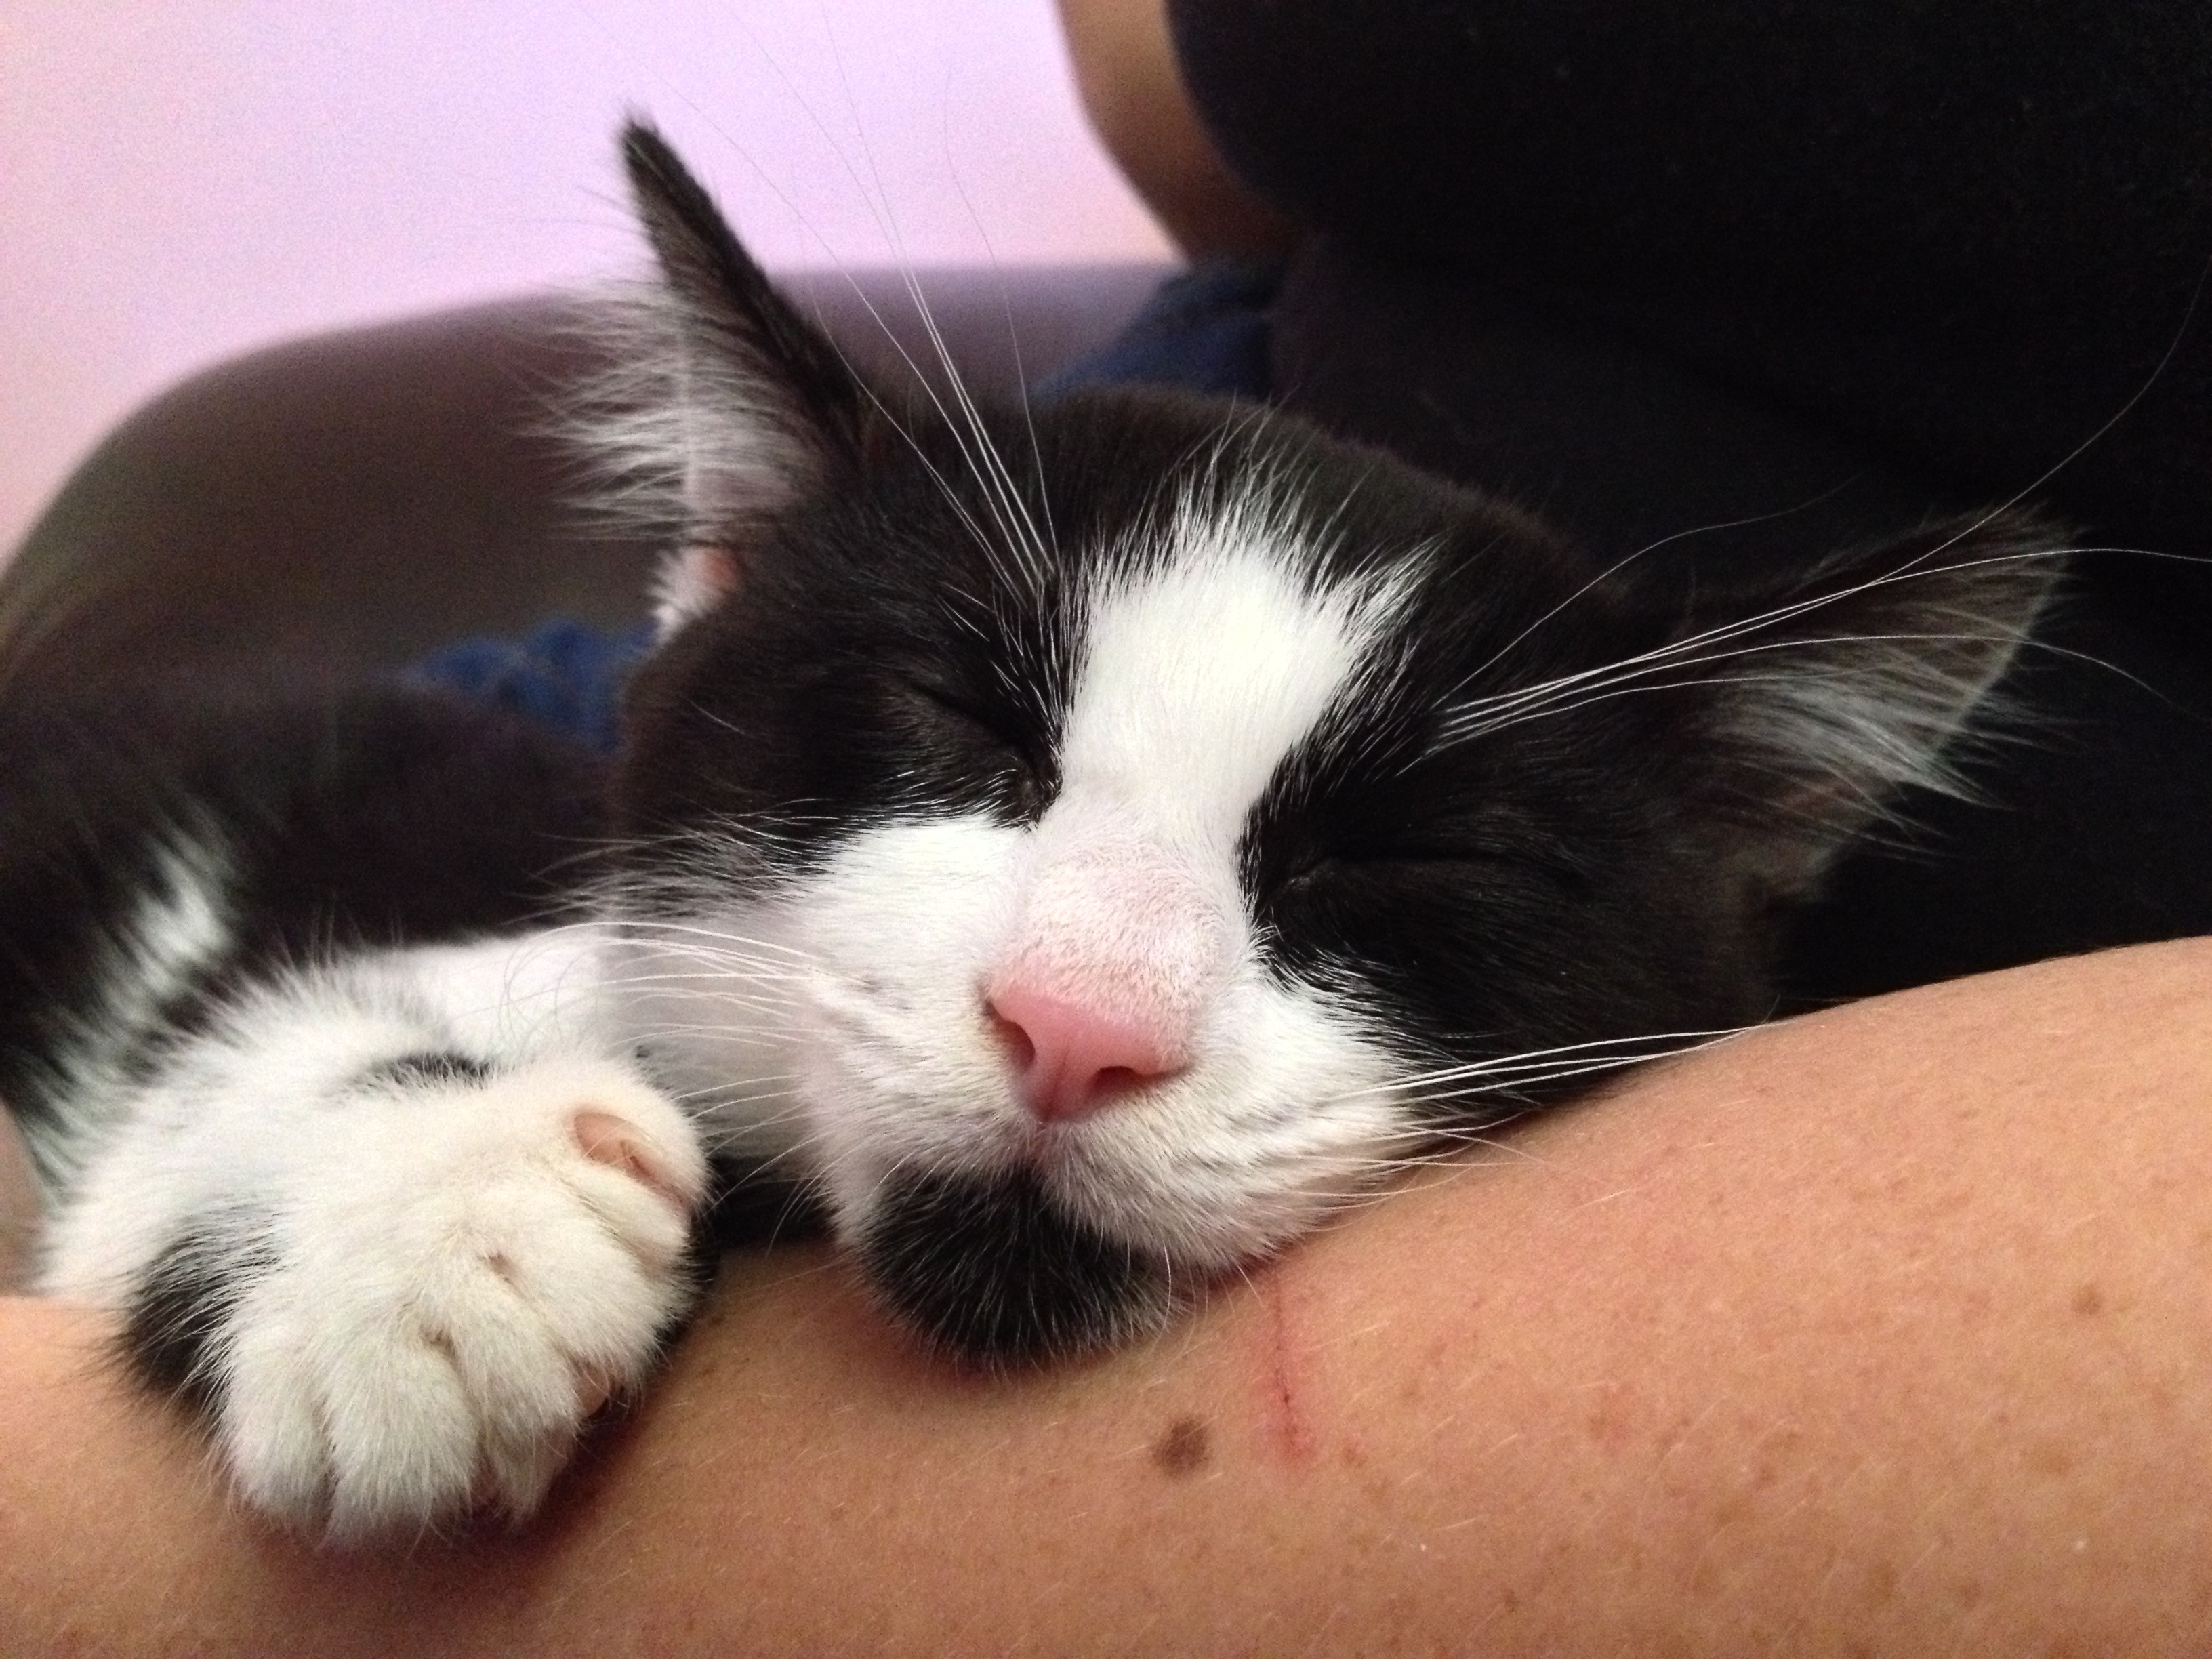 black cat, tuxedo cat, cat, Earl Grey Editing, kitten, kitten cuddles, sleeping cat, sleeping kitten